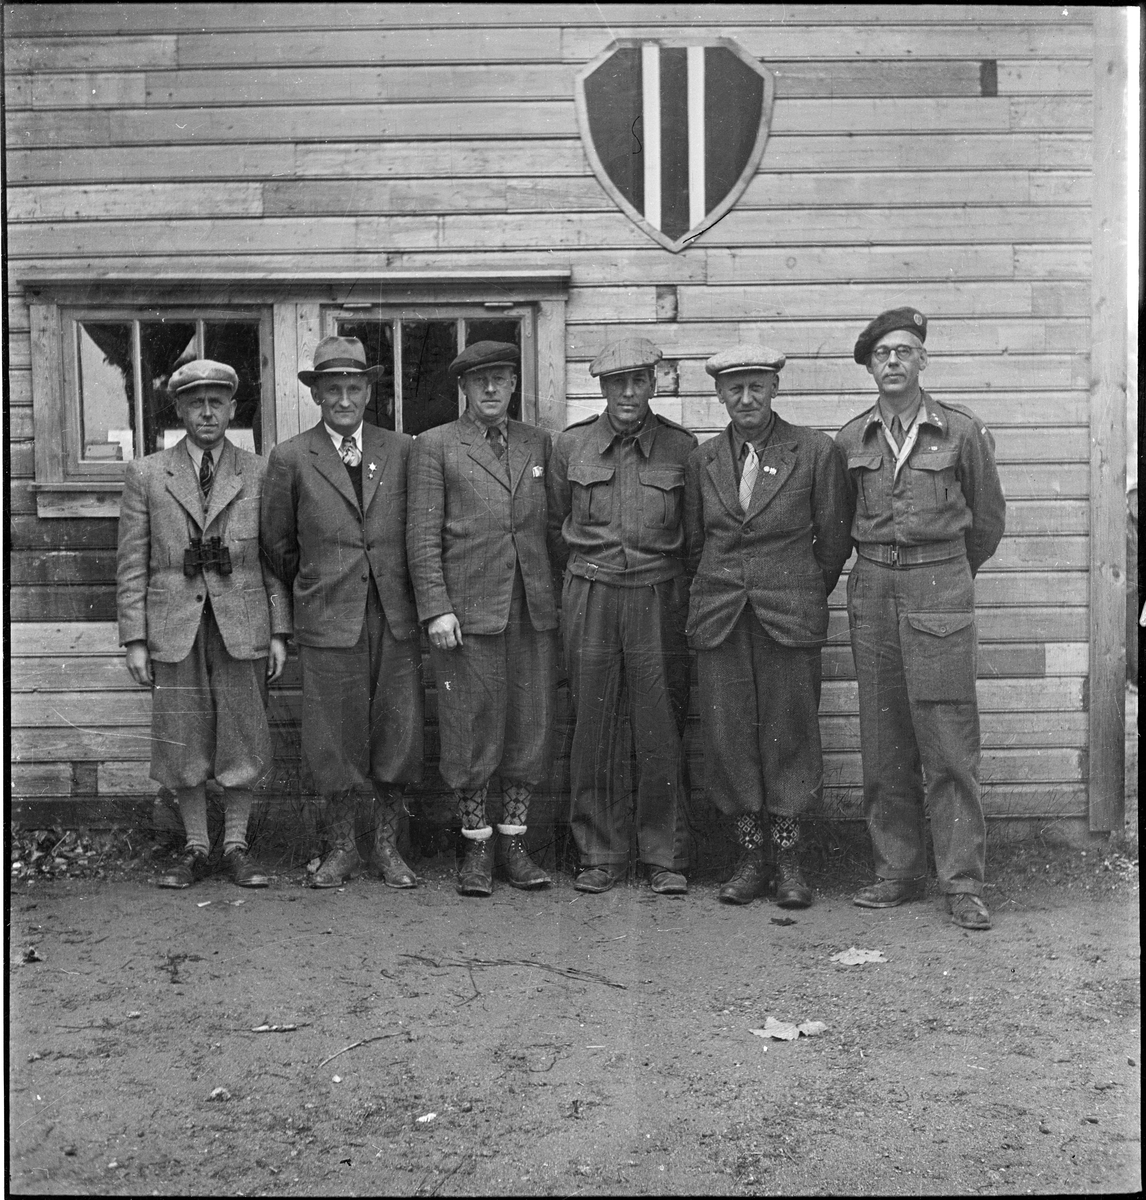 Seks menn står under logoen til Egersund skytterlag på Nyeveien. To har på militær- eller heimevernsuniform.